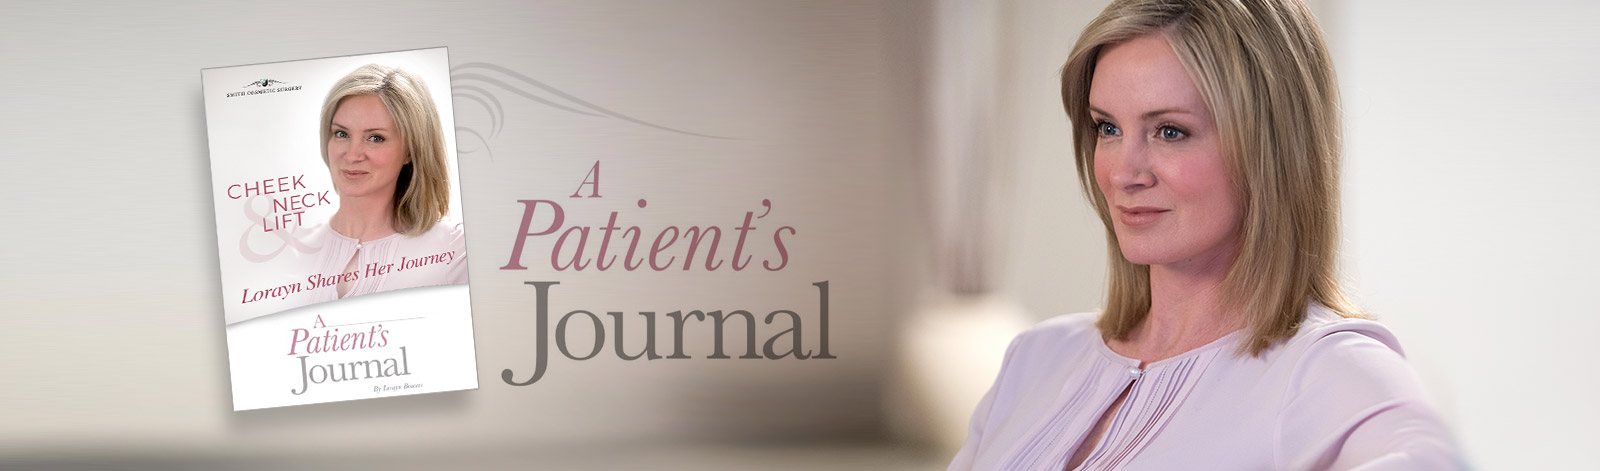 Facial Plastic Surgery: A Patient's Journal